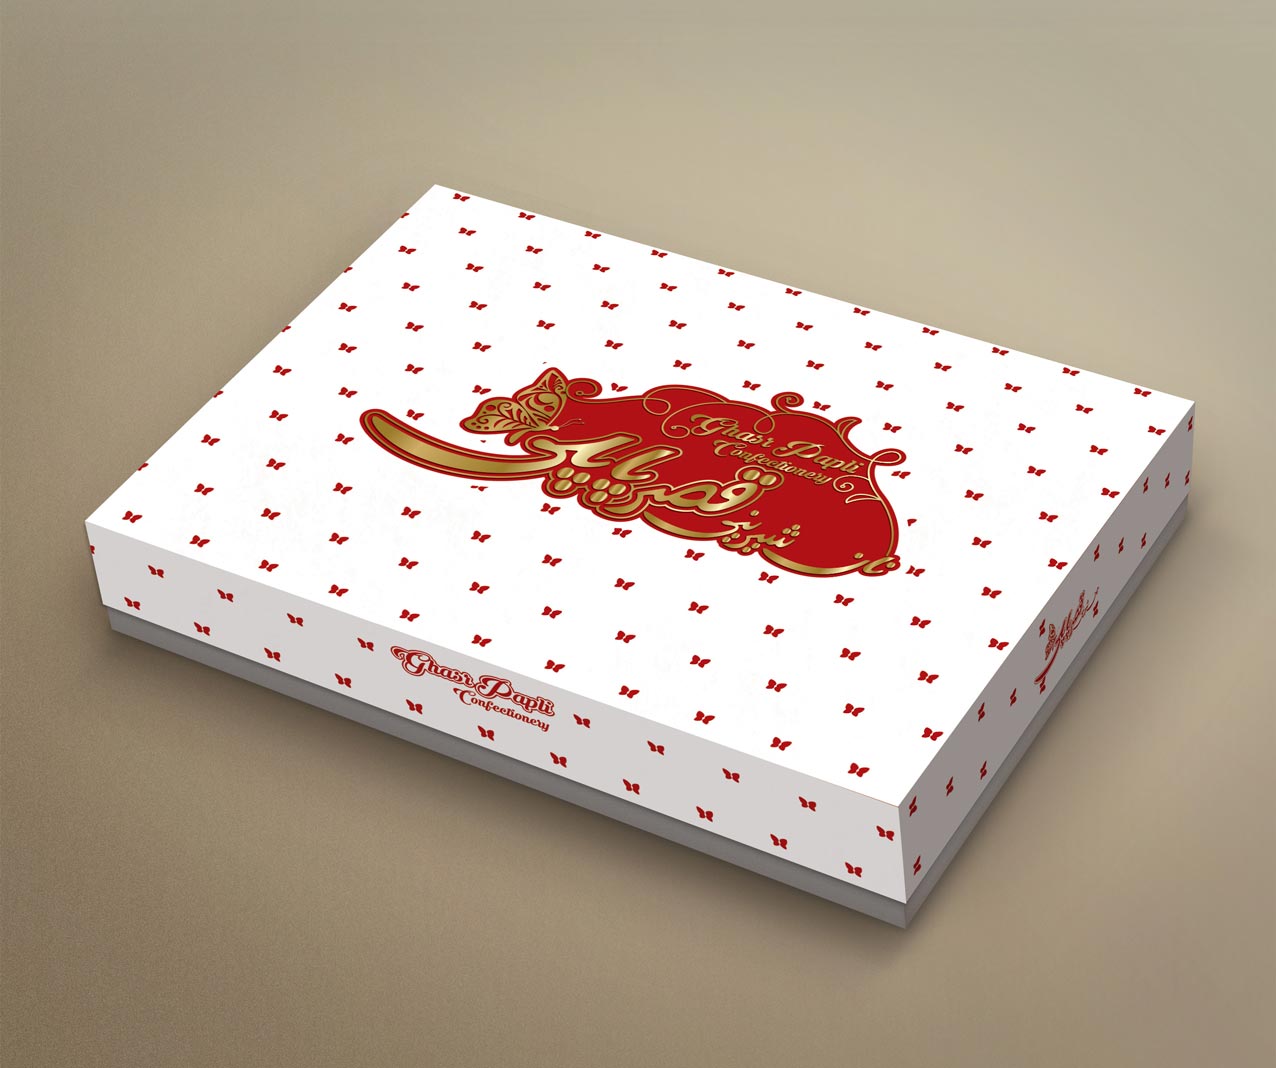 طراحی جعبه شیرینی پاپلی 7